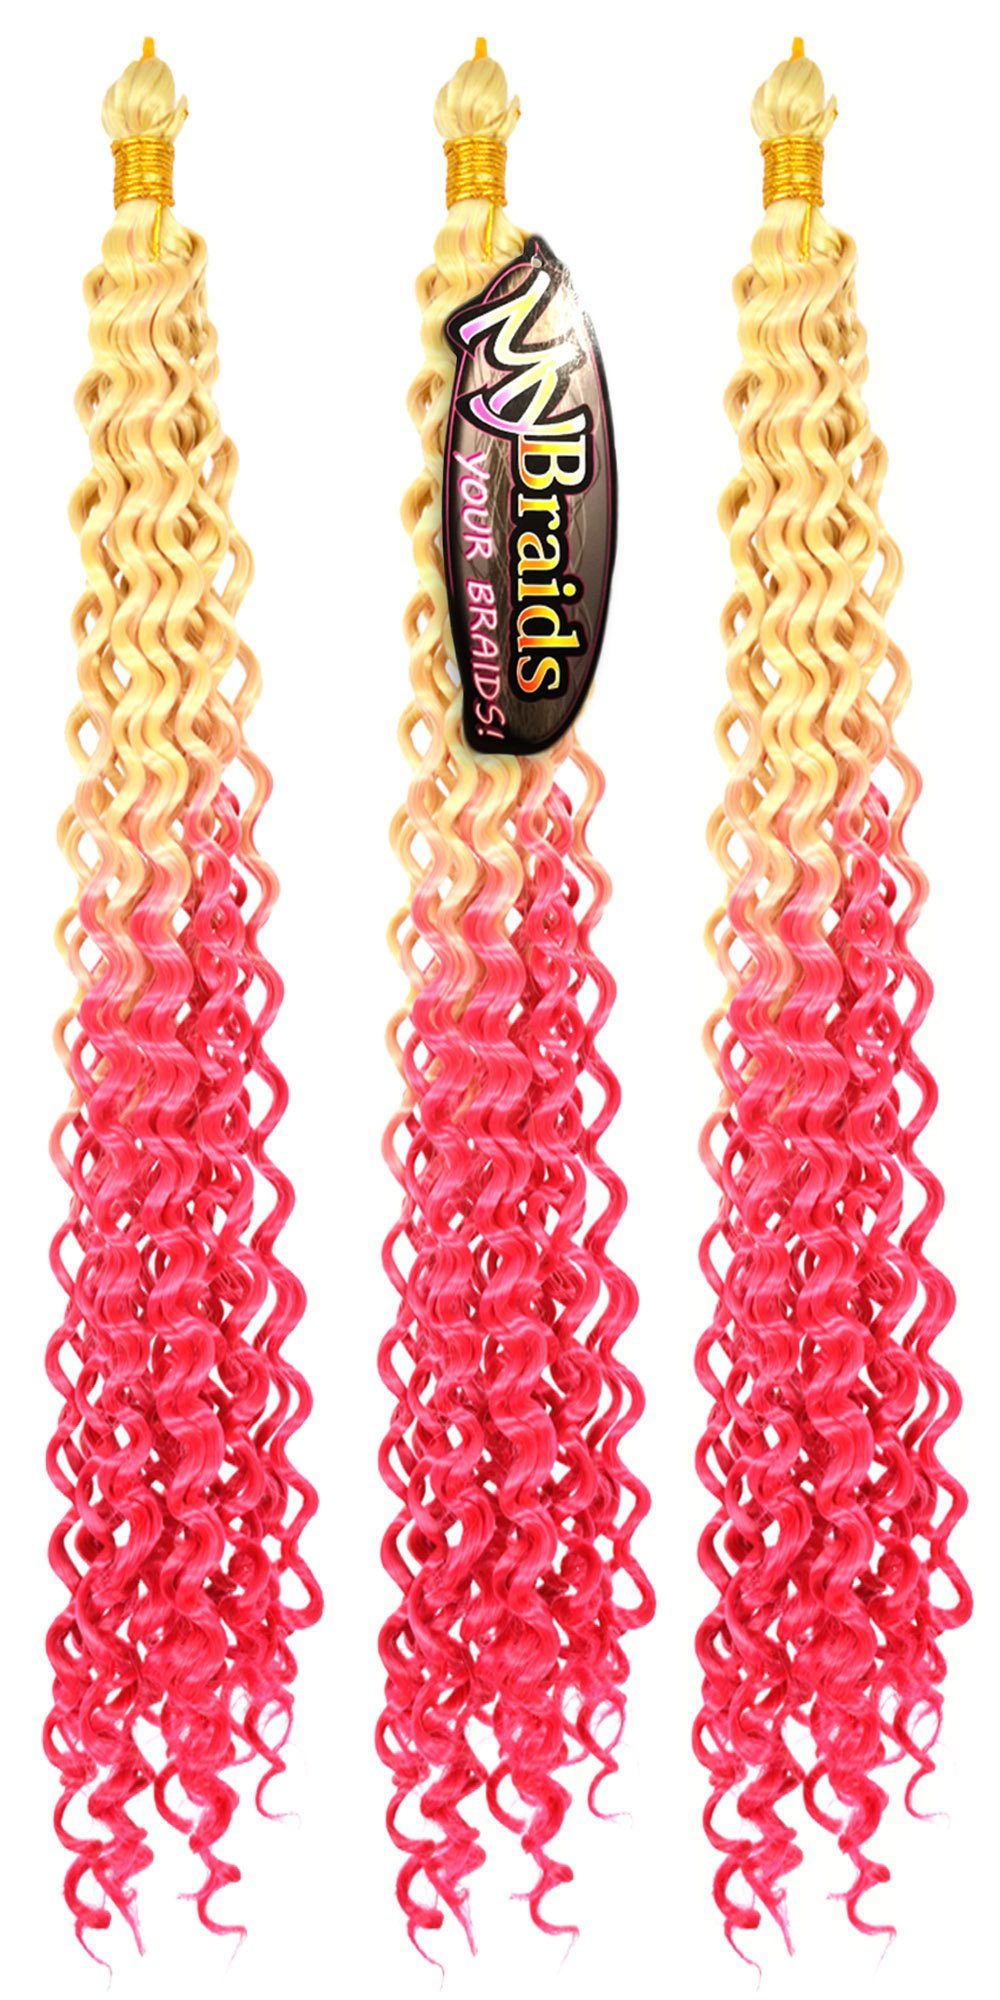 YOUR Wellig 16-WS BRAIDS! Hellblond-Pink Kunsthaar-Extension MyBraids Ombre Wave Deep Crochet Pack 3er Flechthaar Zöpfe Braids